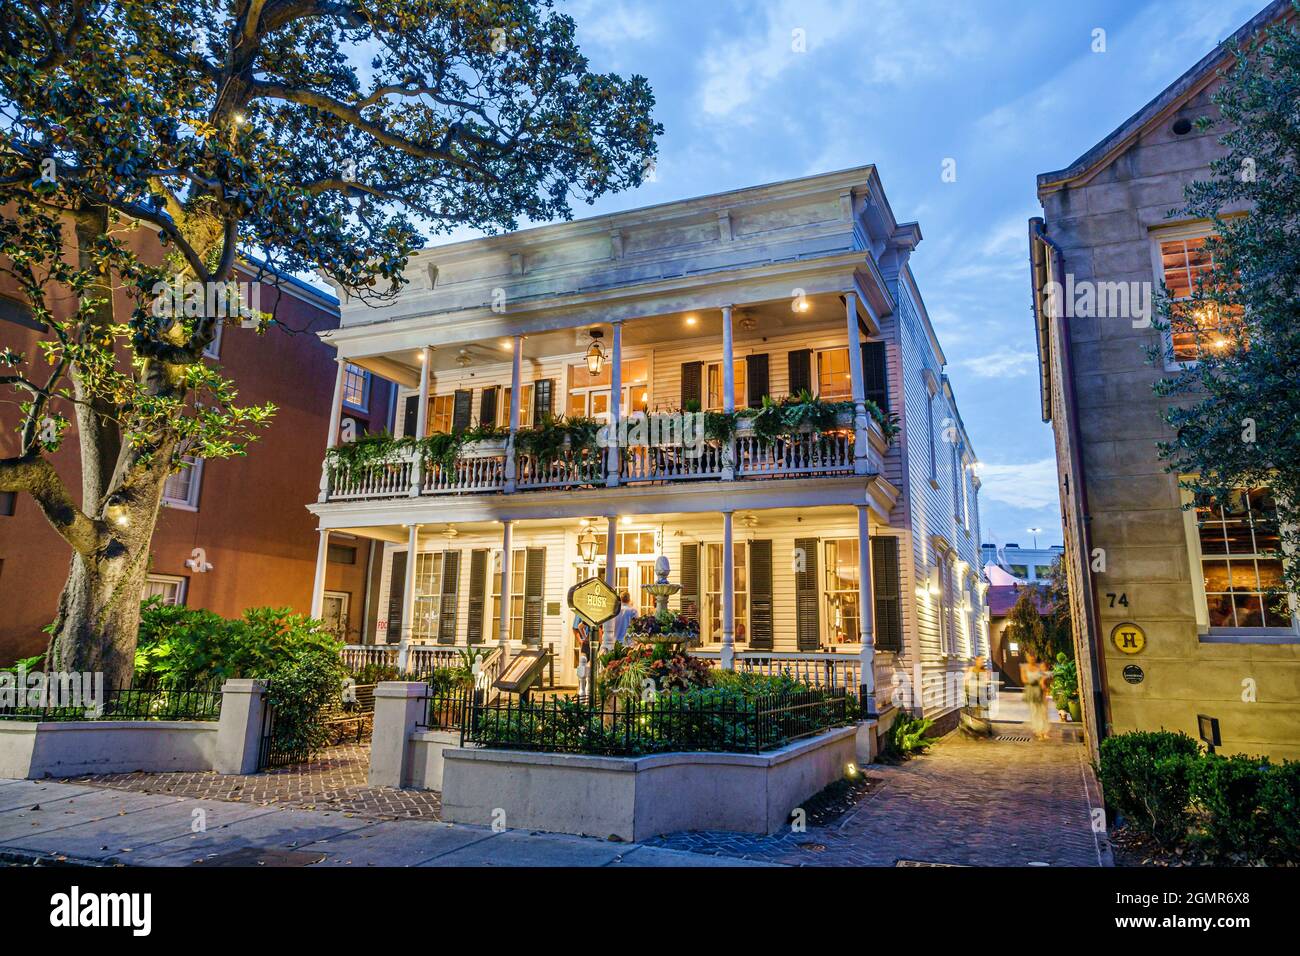 Charleston South Carolina, historische Innenstadt, Queen Street, Husk Restaurant Abendessen Nachtleben Stockfoto